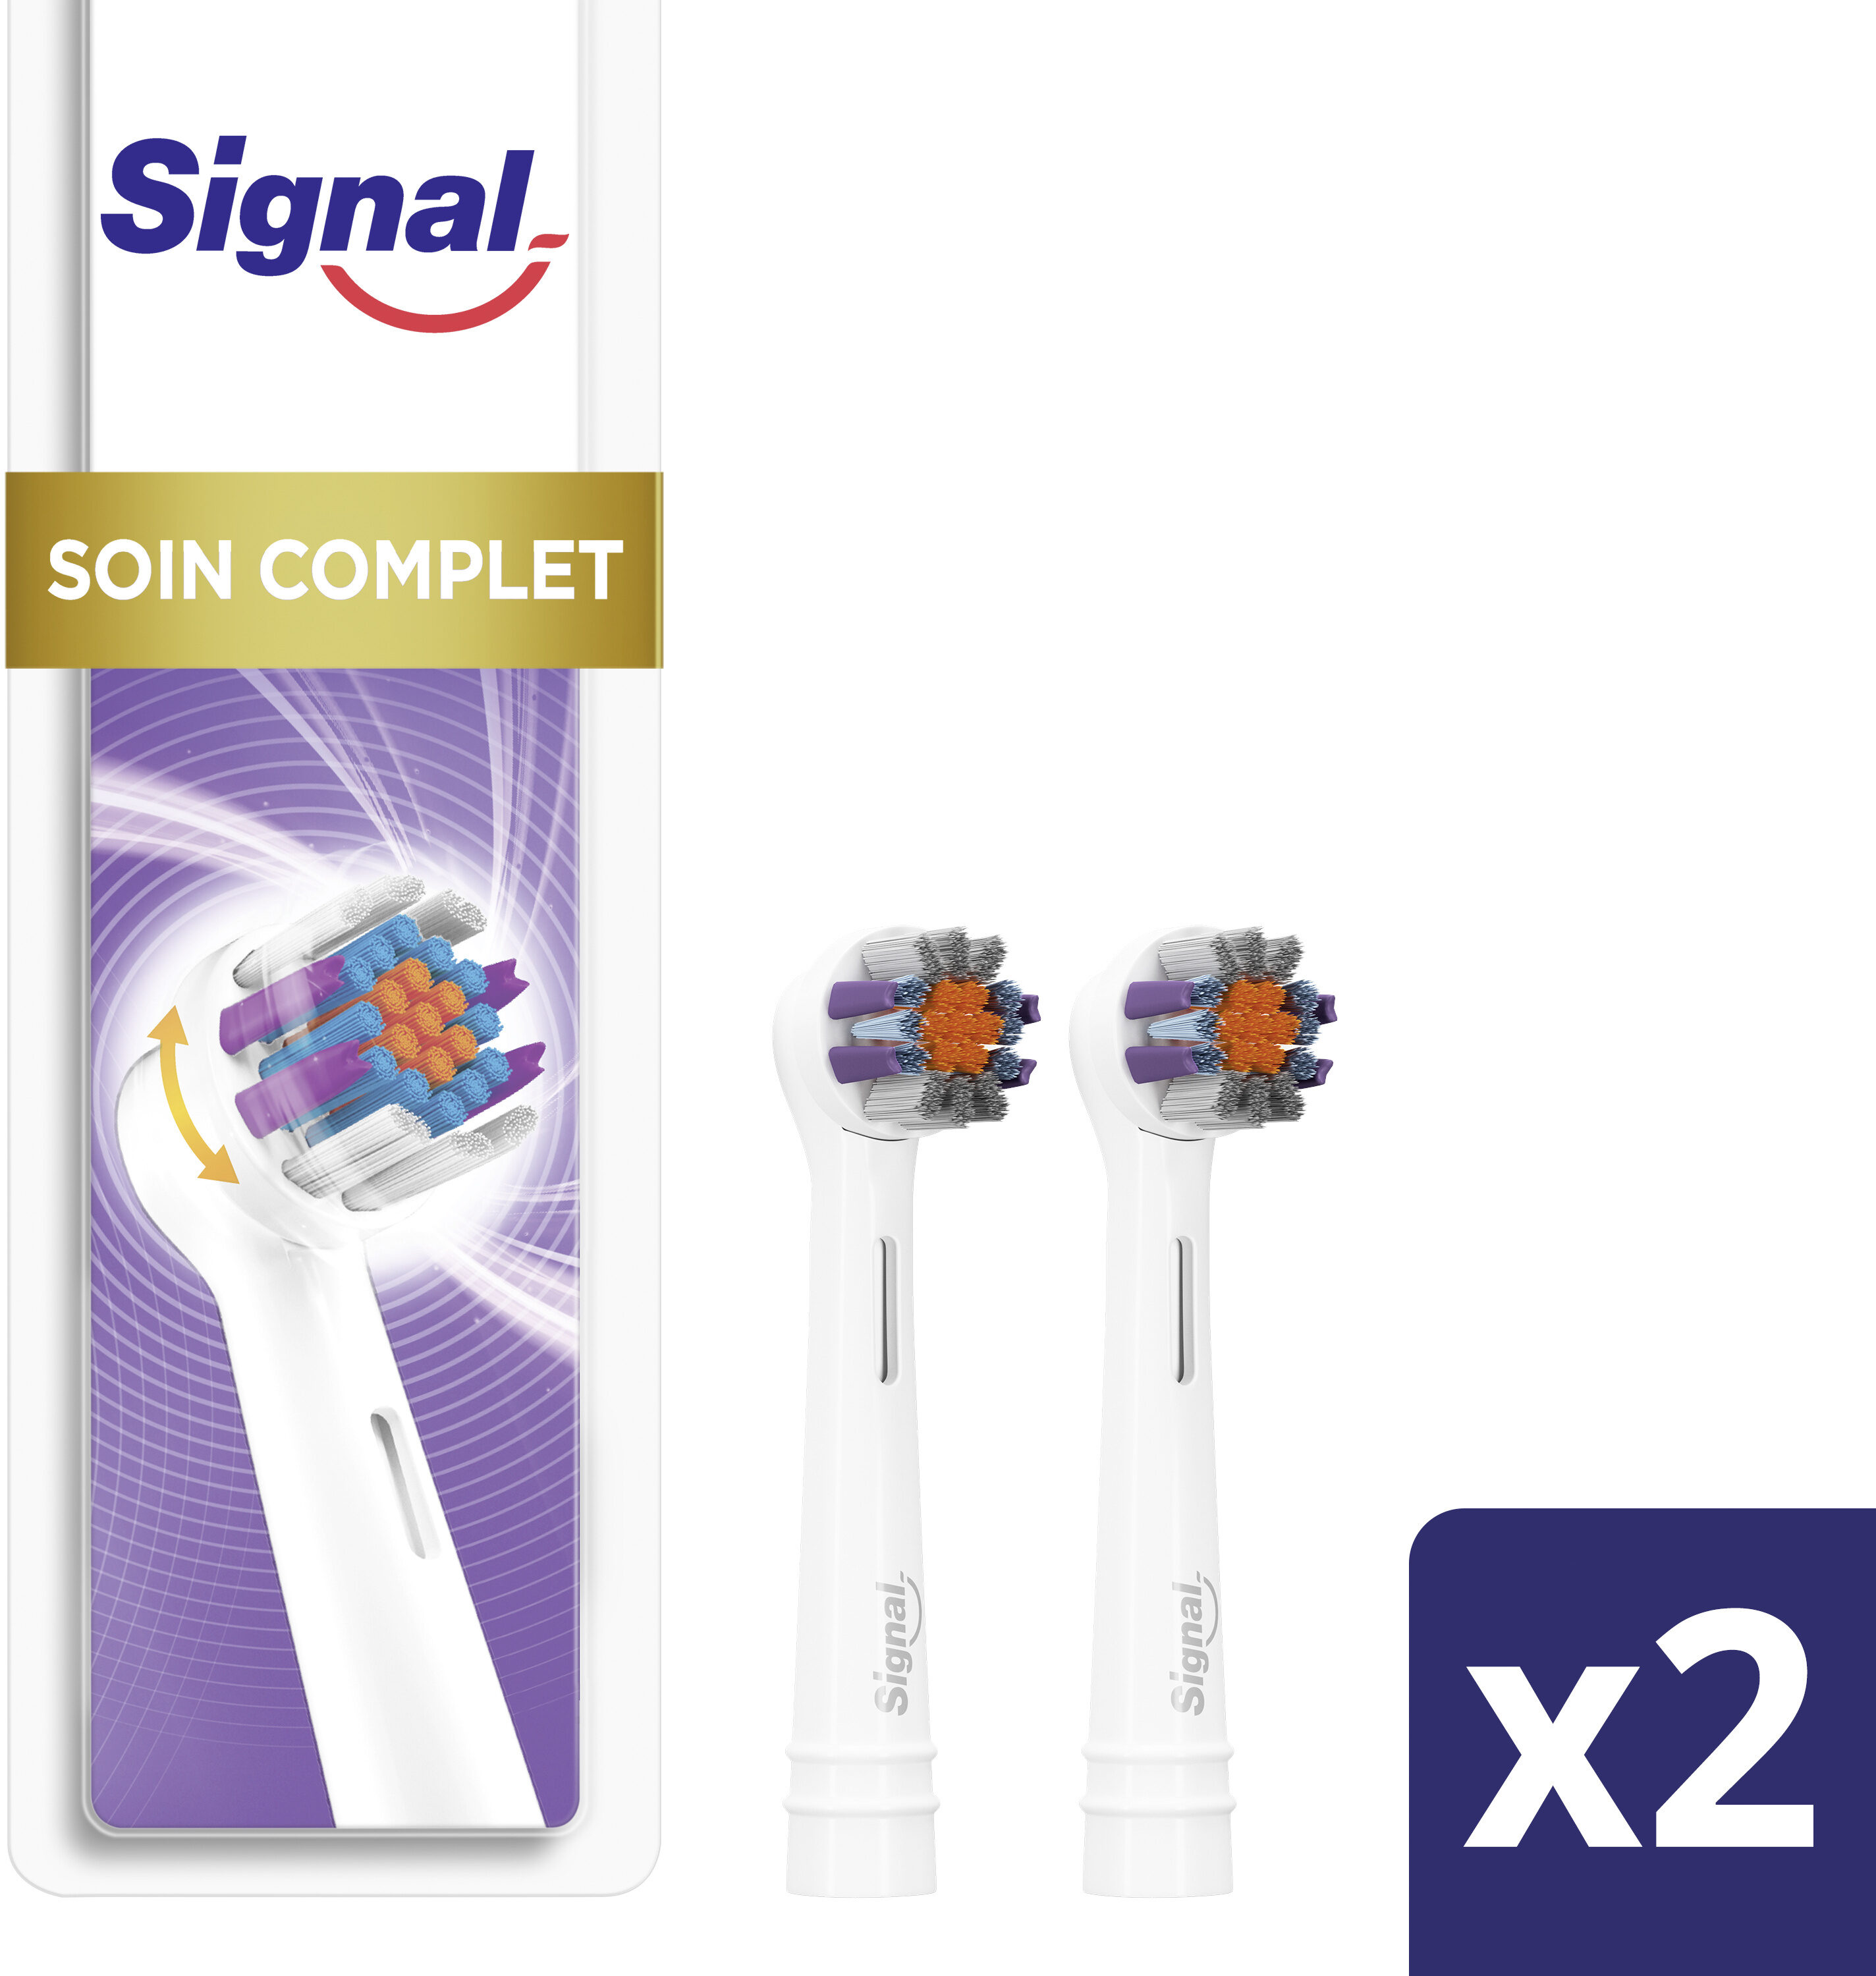 Signal Brossette Électrique Integral 8 Soin Complet x2 - Product - fr